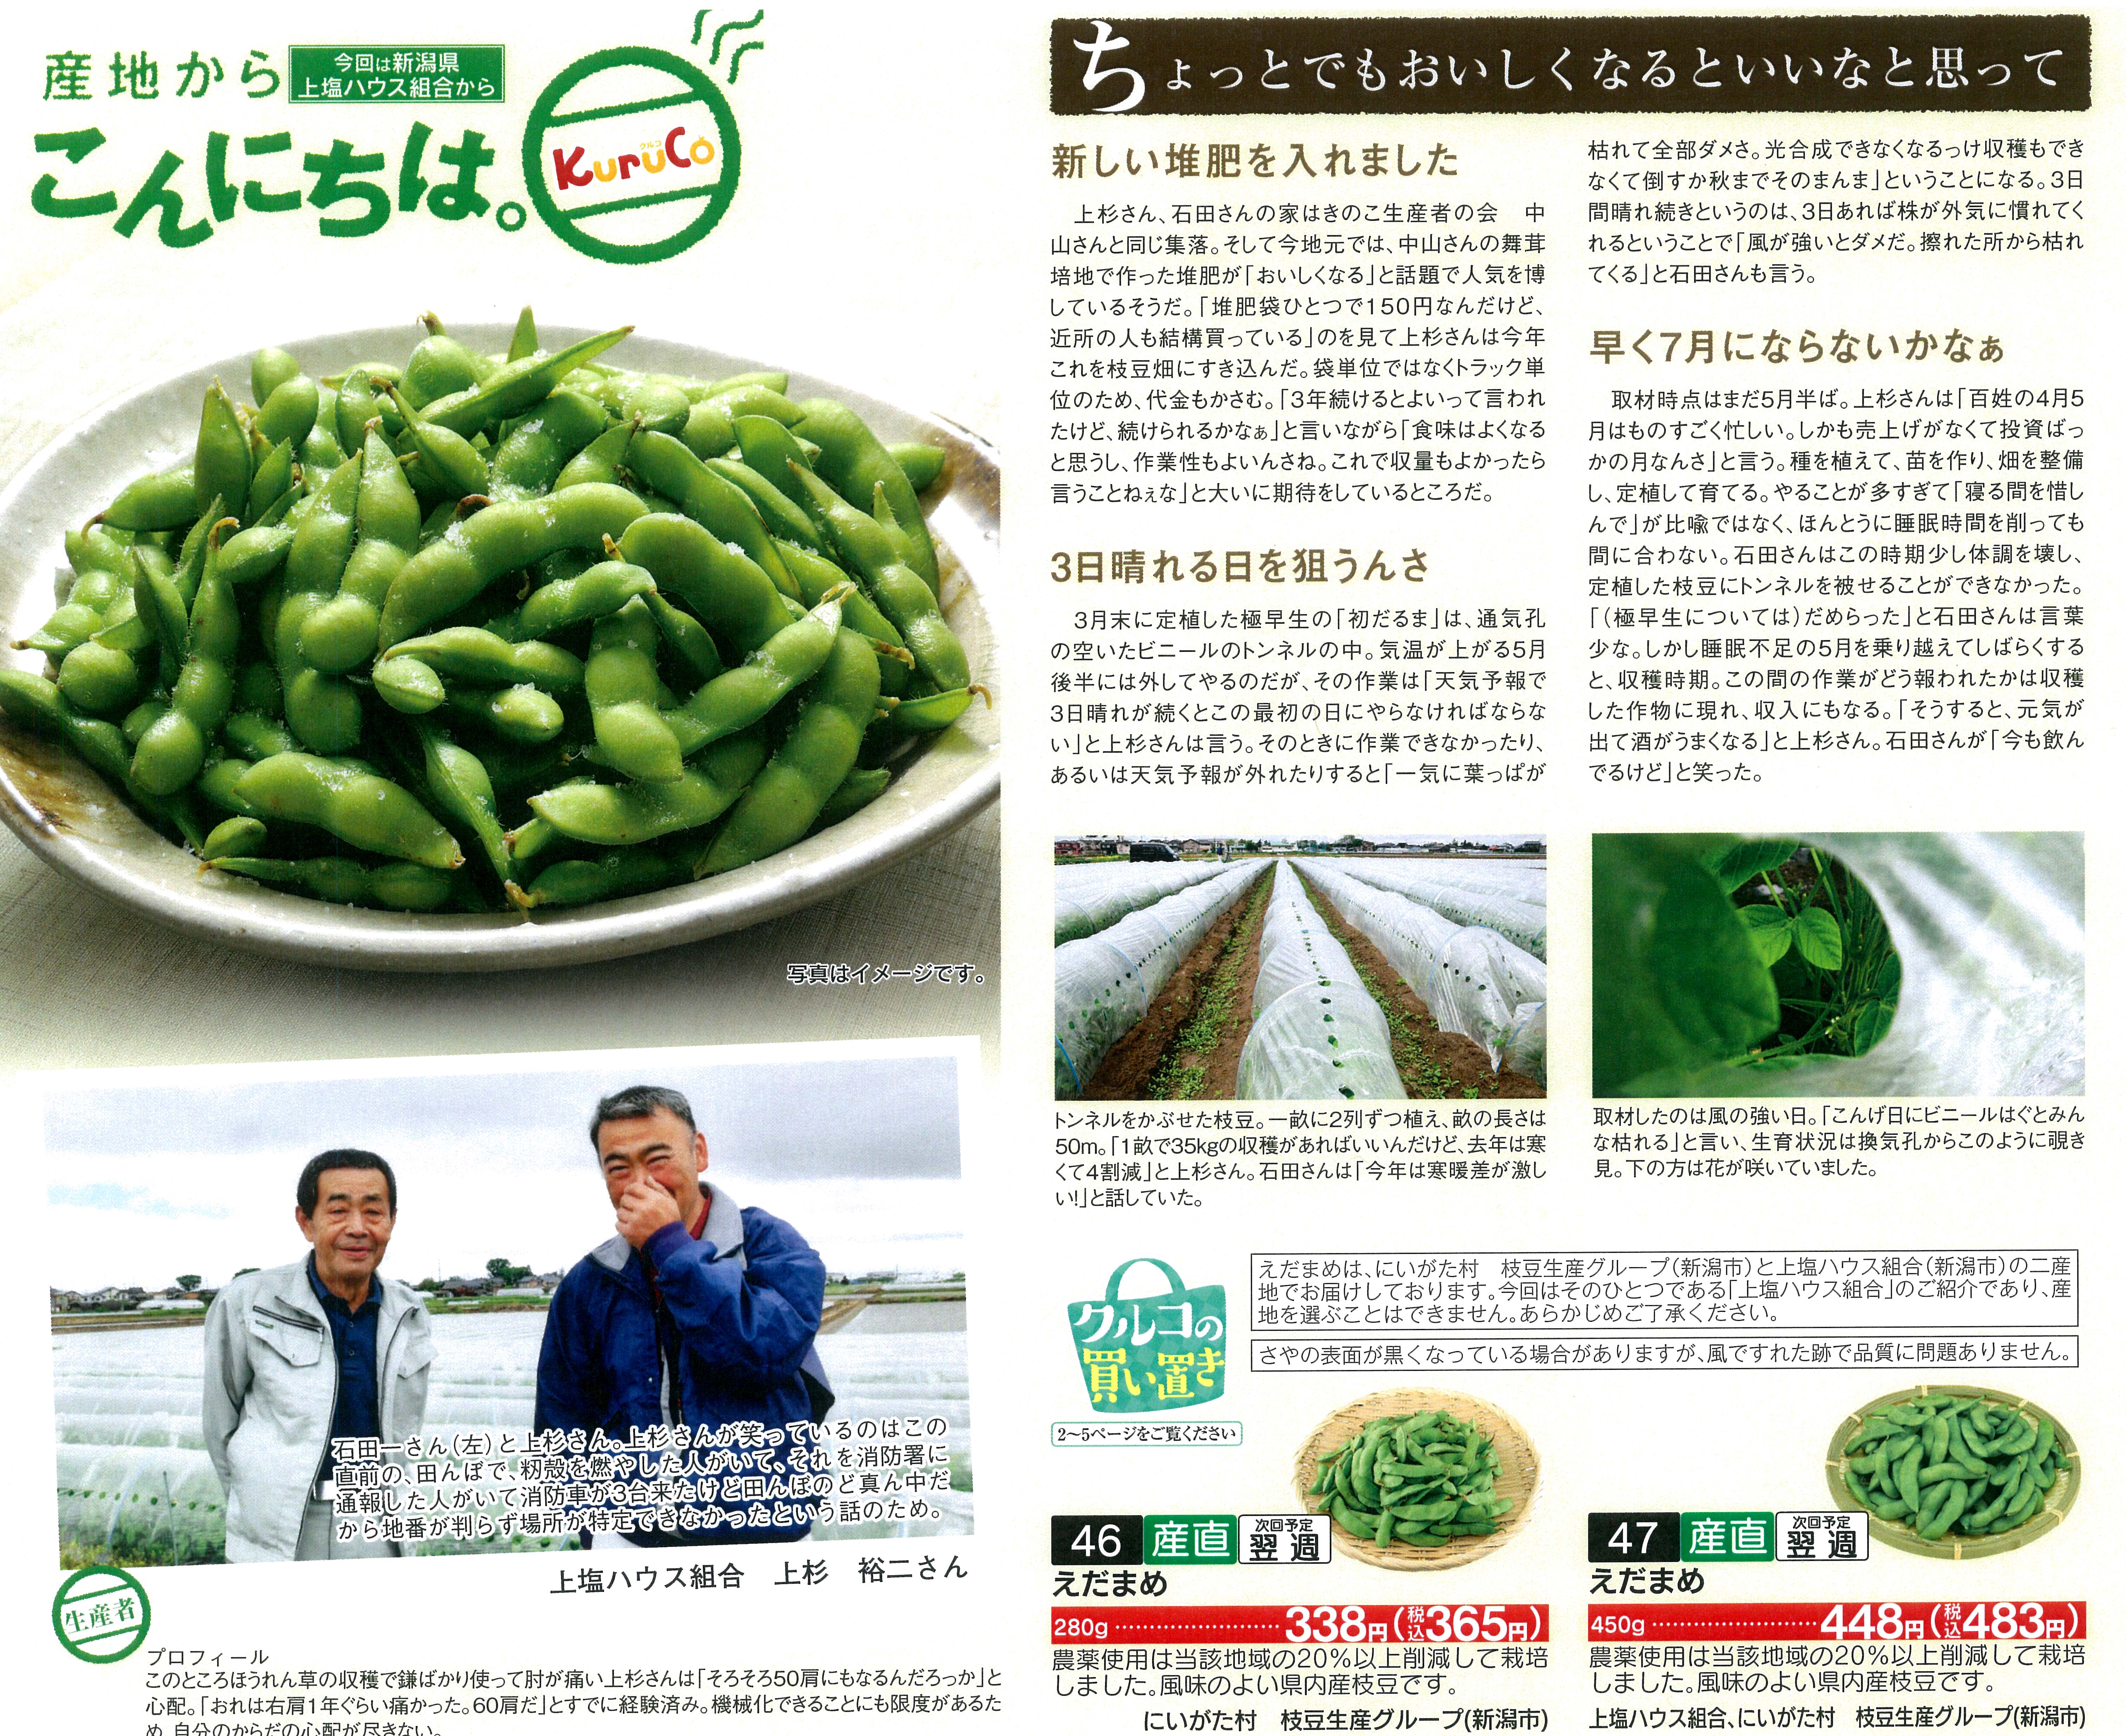 商品カタログ「週刊KuruCo」2018年7月1週 「産地からこんにちは